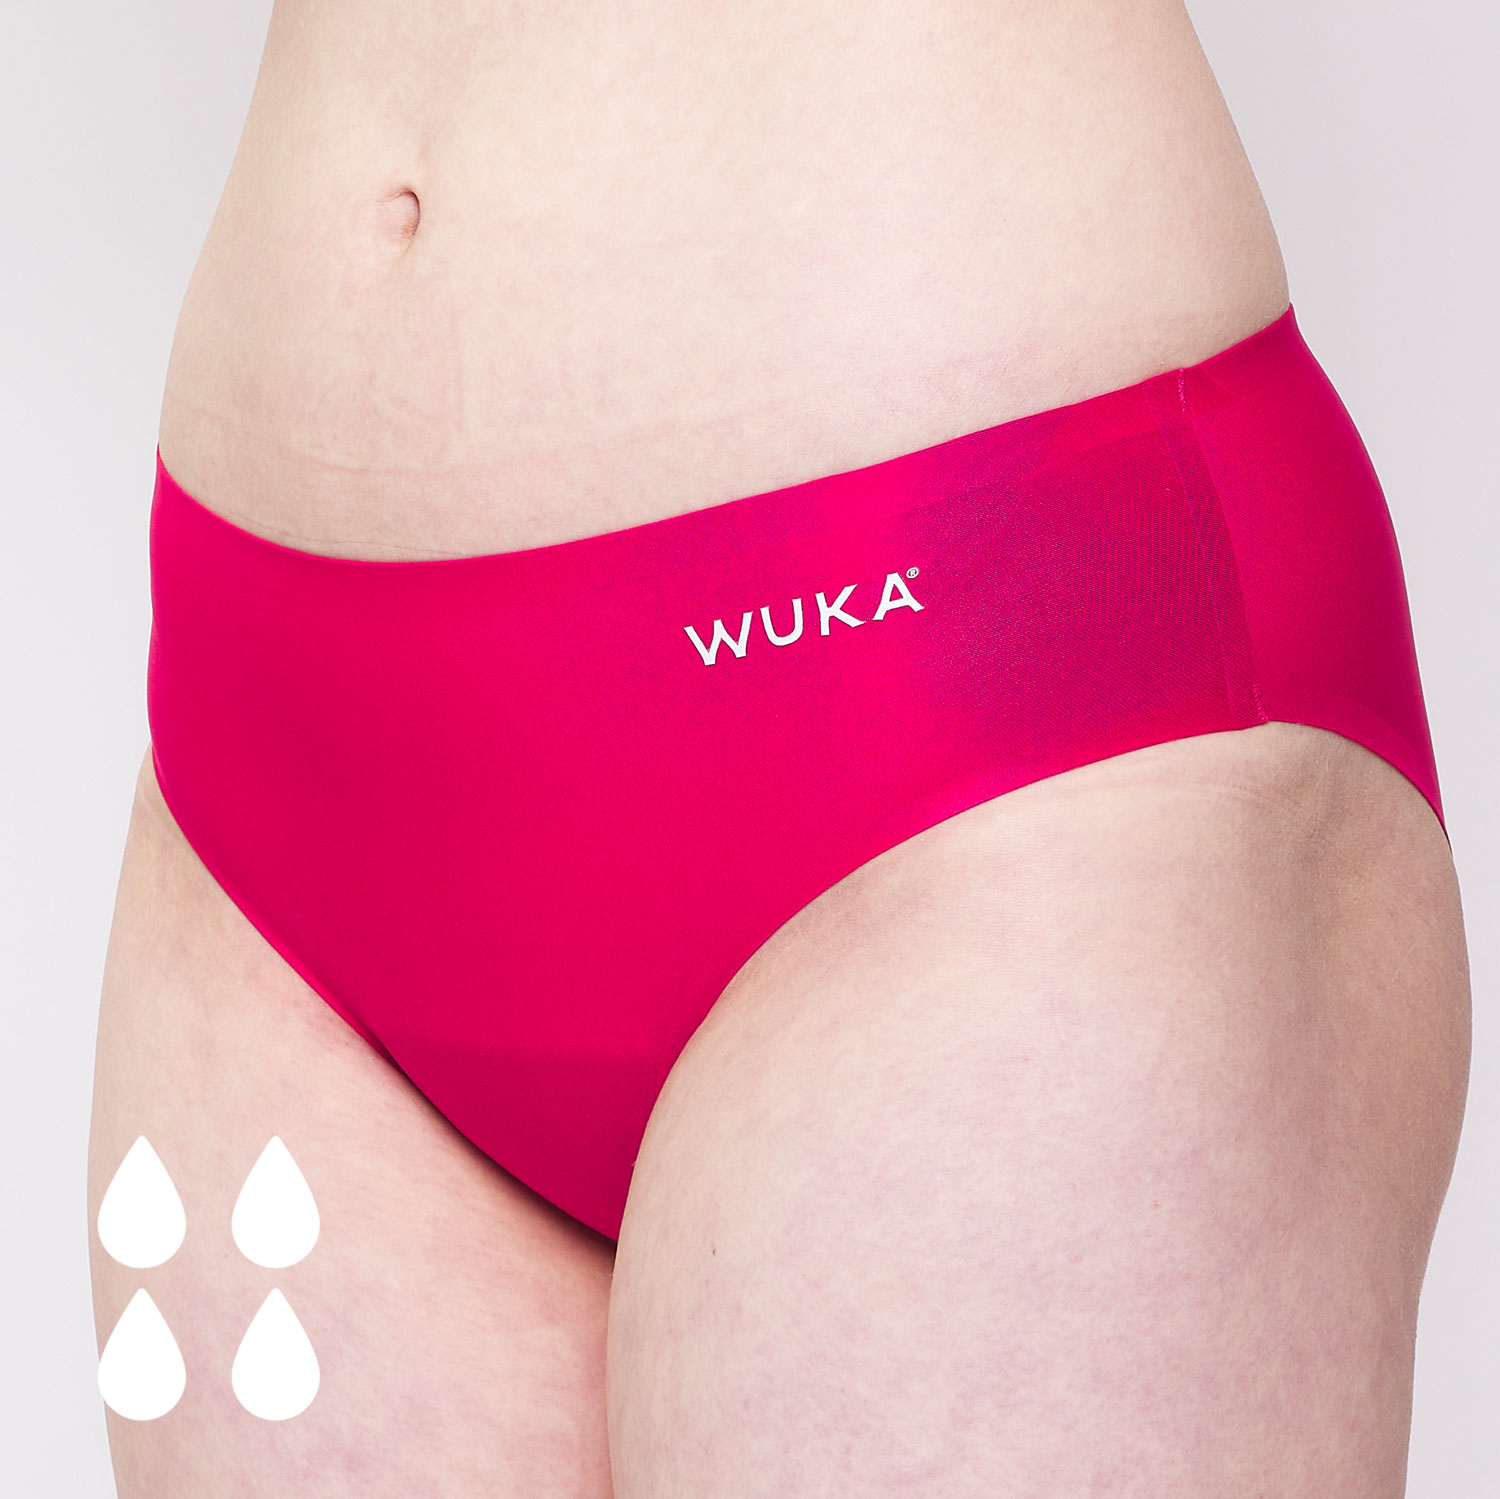 CODE RED period Panties Menstrual Leak Proof Underwear-Pink-L